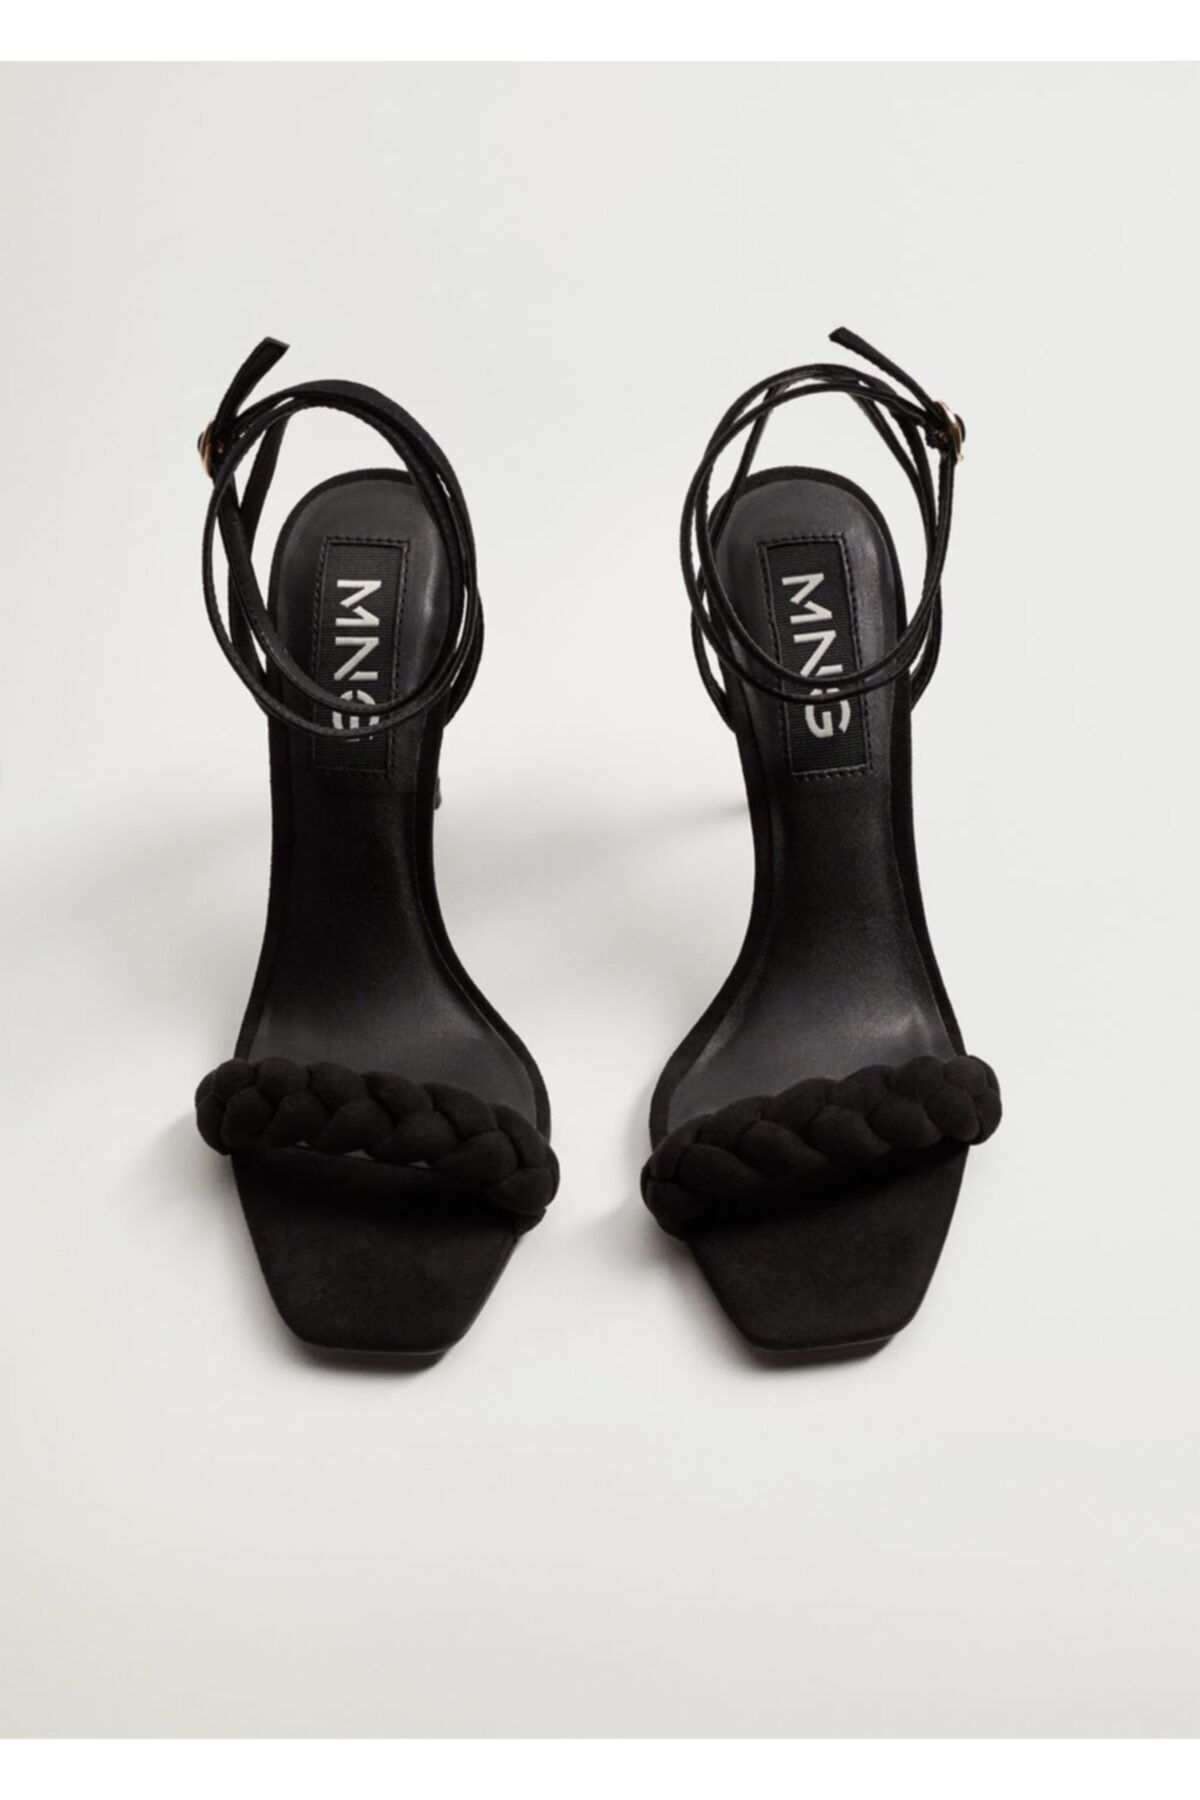 MANGO Kadın Siyah Örgü Bantlı Topuklu Sandalet